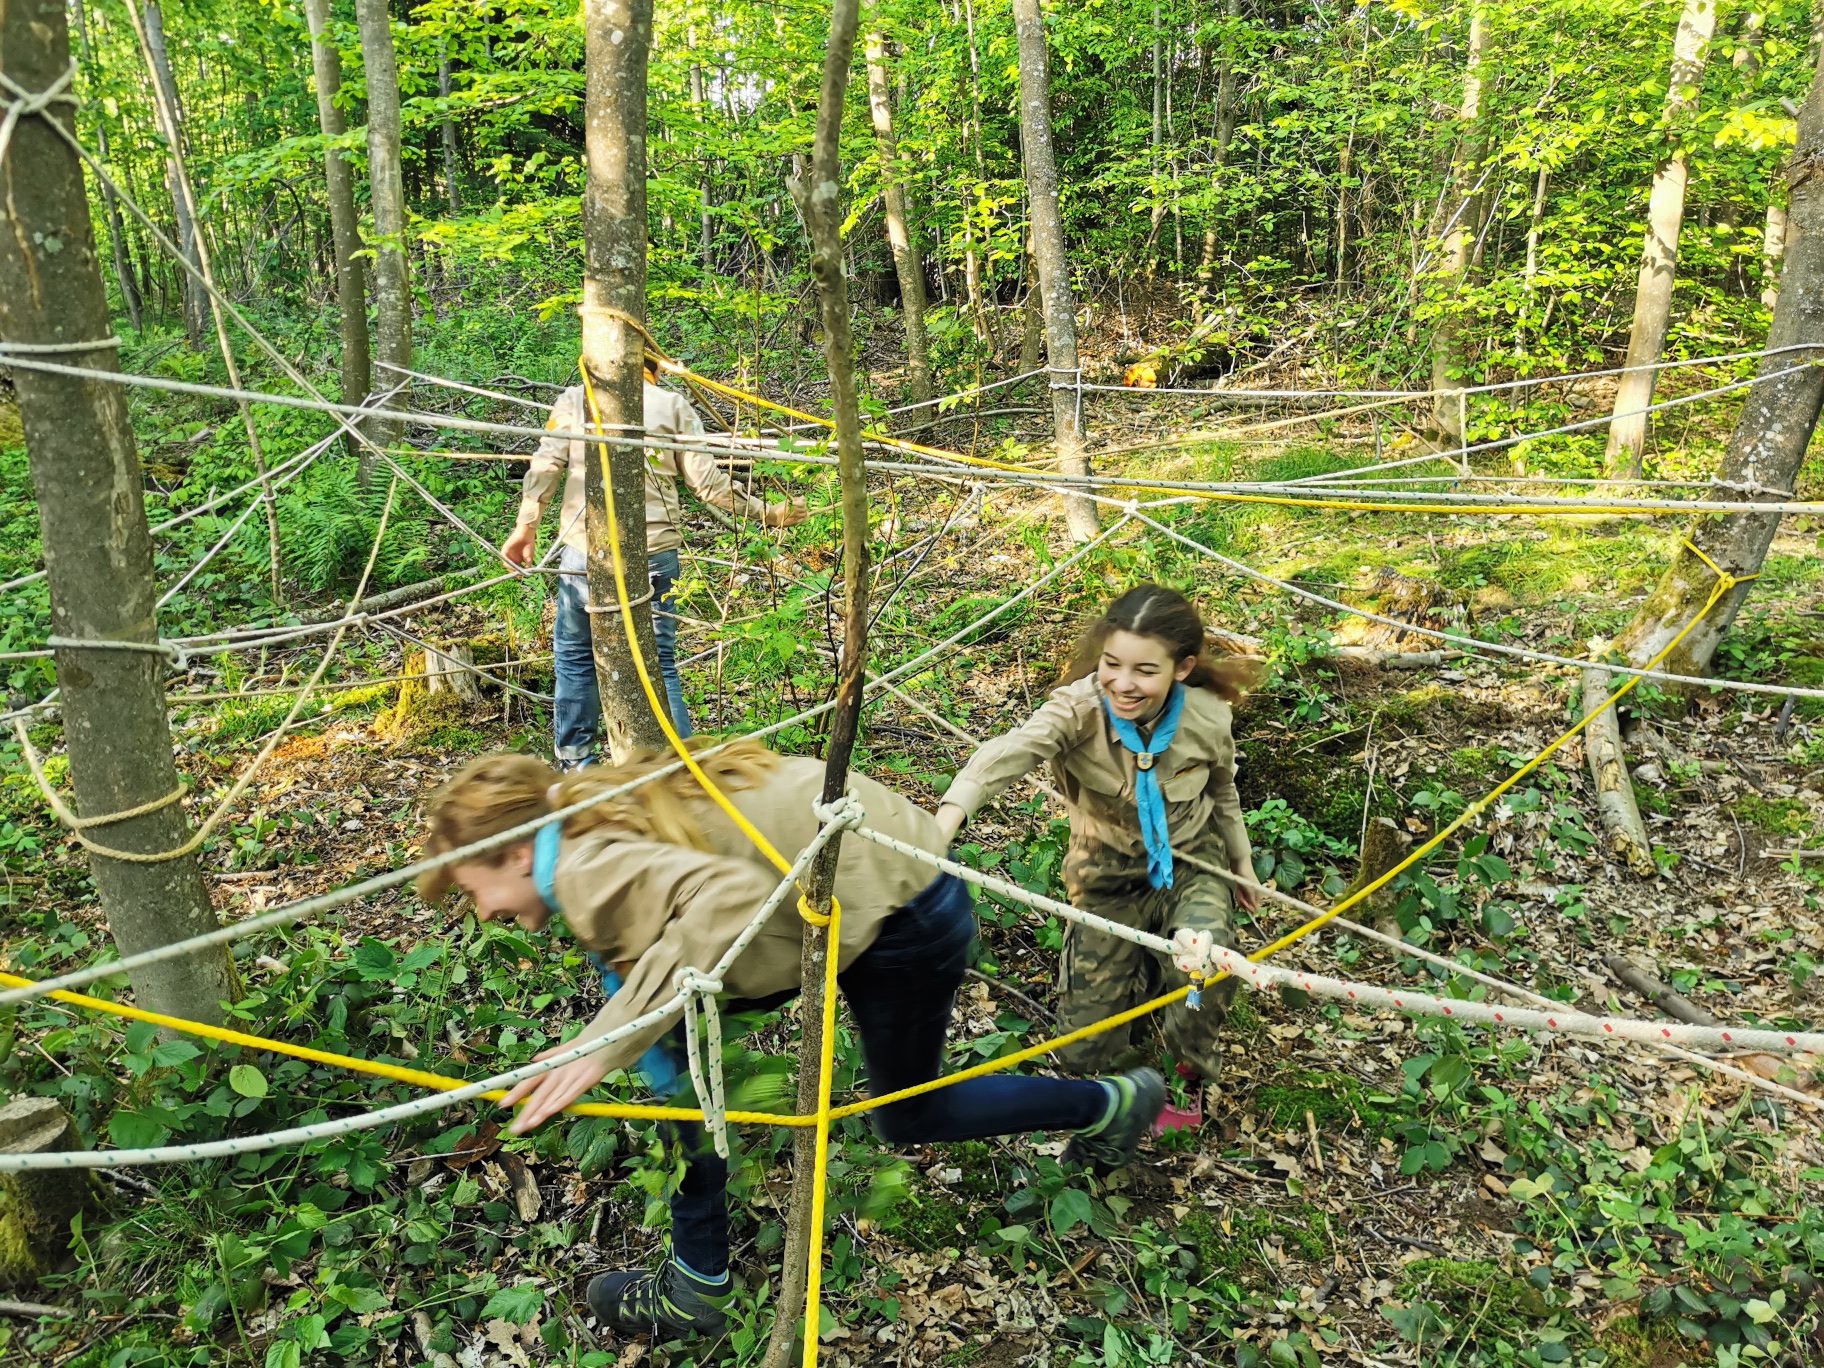 Parcours im Wald - selbst gebautes Spinnennetz mit Pfadfindern